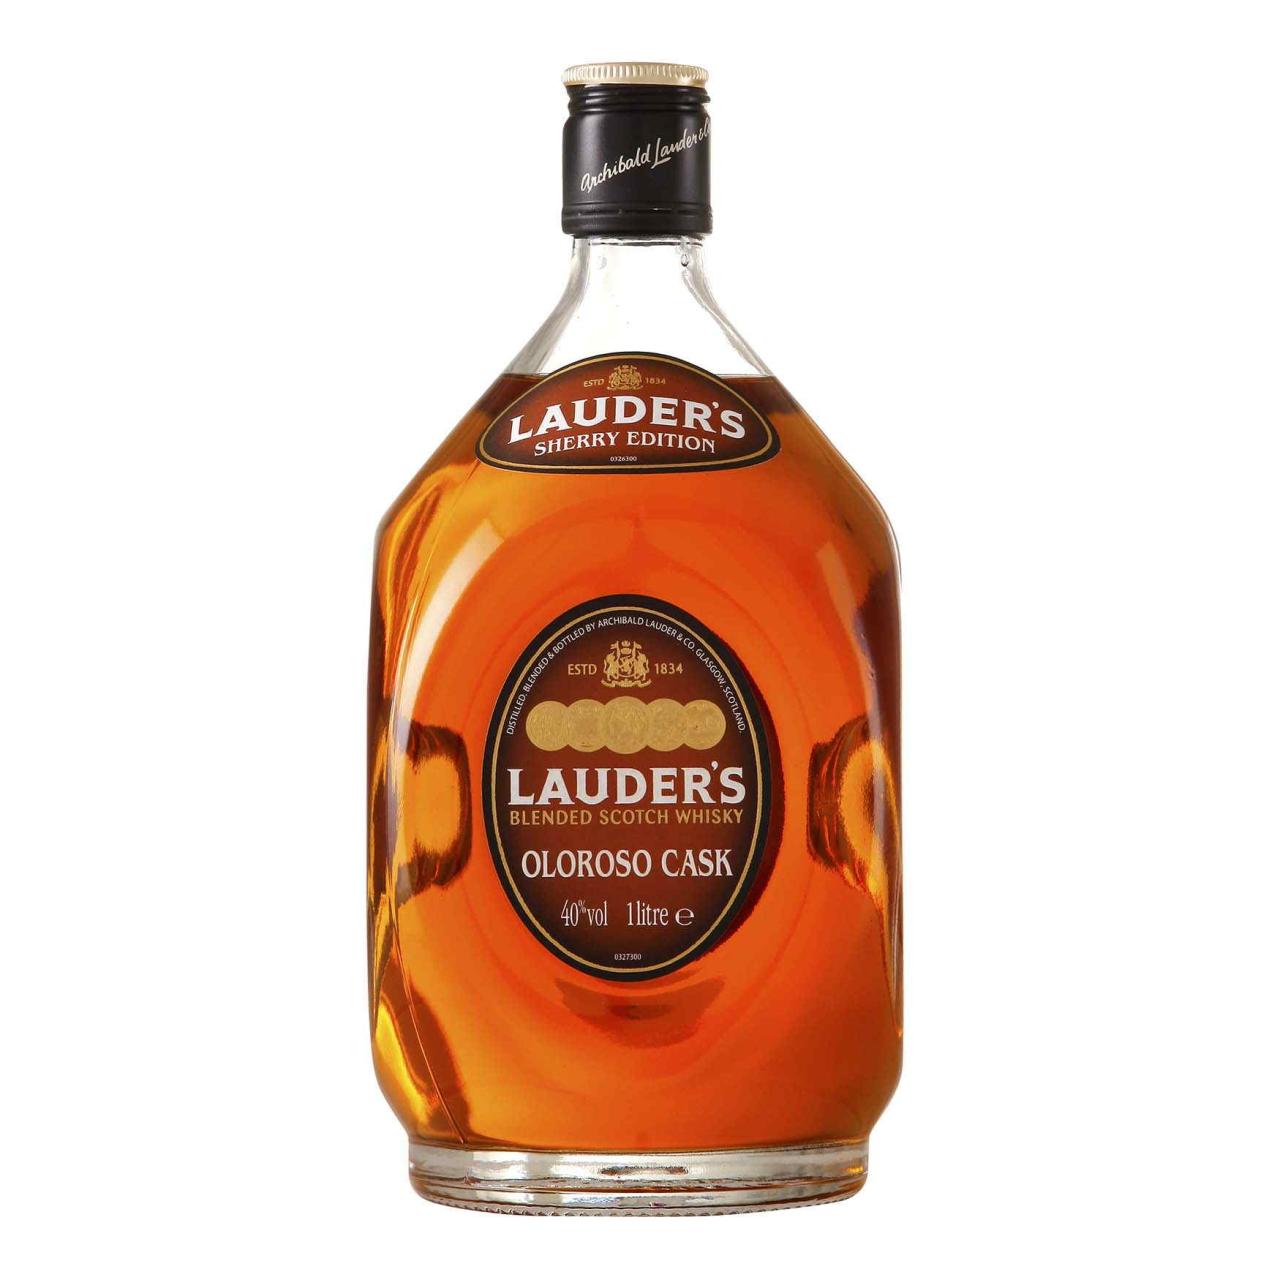 Lauder's Oloroso Cask 40% 1,0l